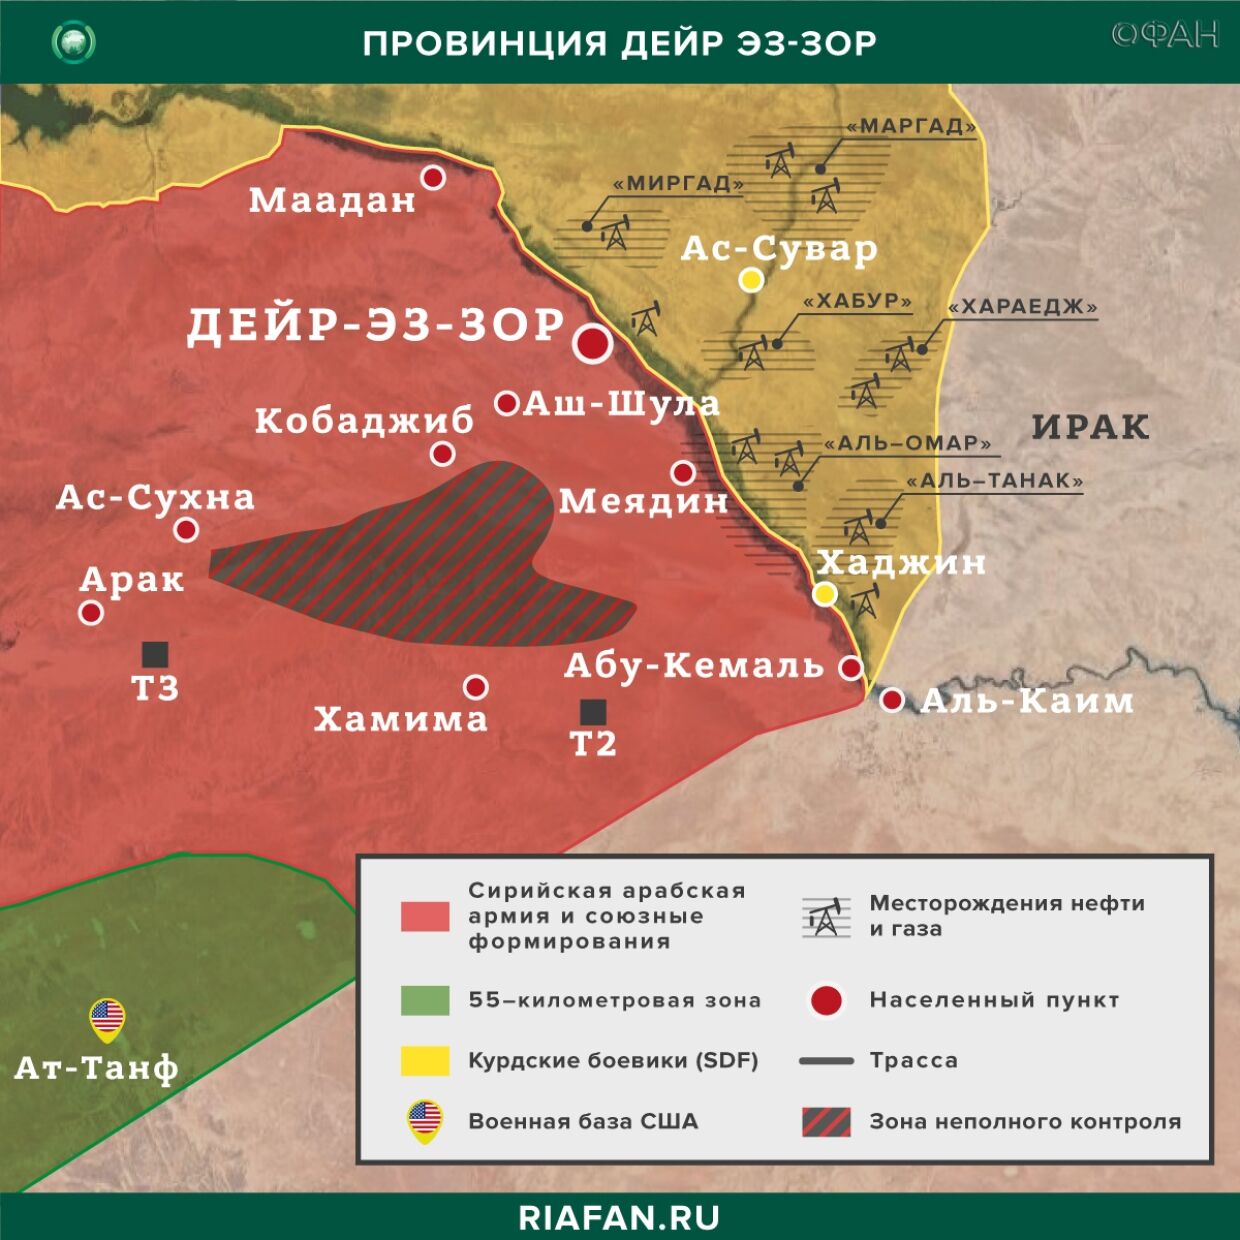 叙利亚每日结果 5 可能 06.00: SDF подавили бунт заключенных ИГ в Хасаке, совместное патрулирование РФ и Турции в САР